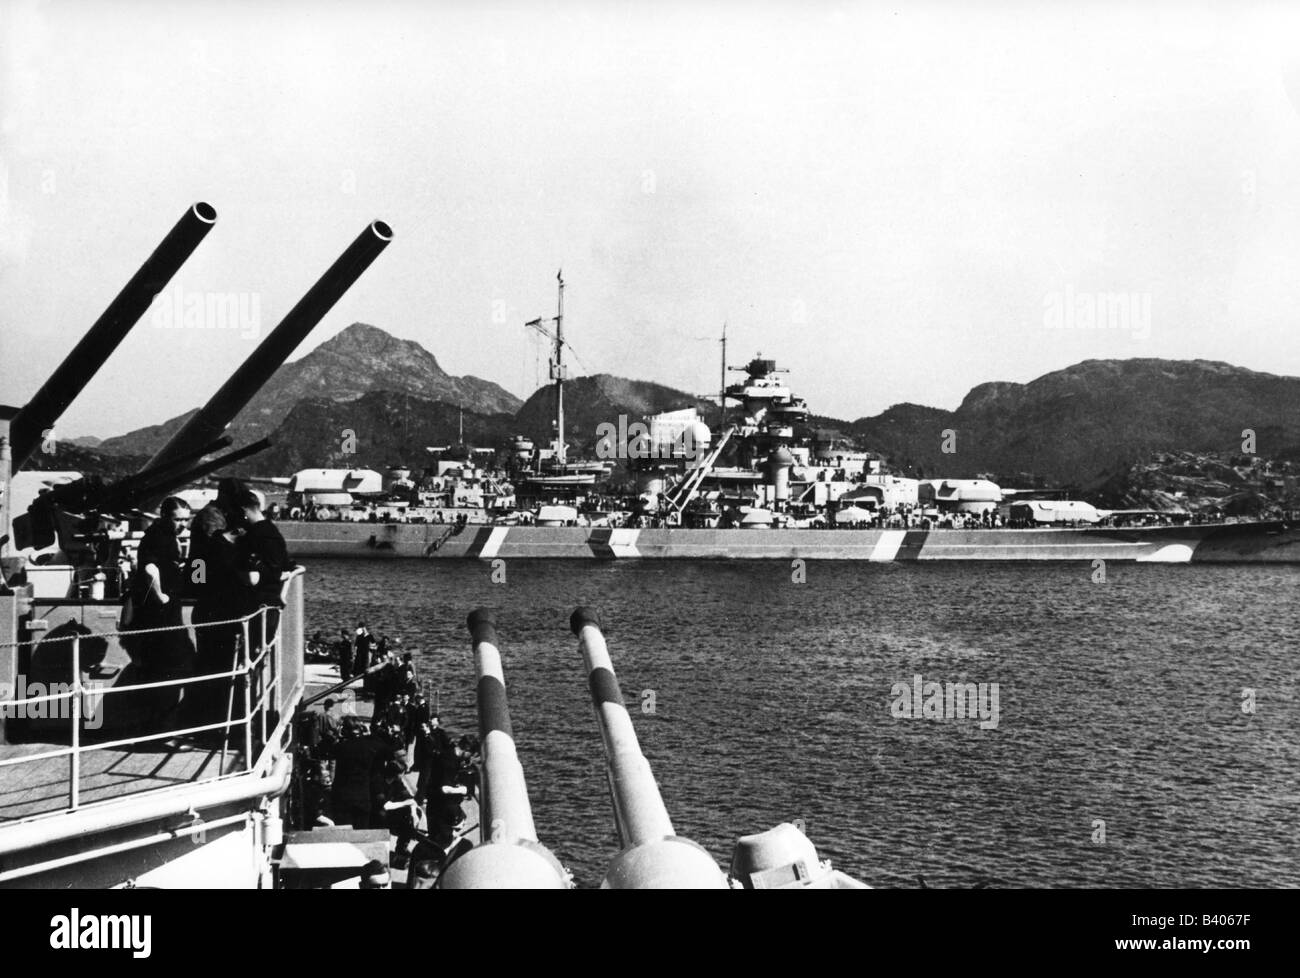 Eventi, Seconda guerra mondiale / seconda guerra mondiale, guerra navale, nave da guerra tedesca 'Bismarck' visto dall'incrociatore pesante 'Prinz Eugen', fiordo a sud di Bergen, Norvegia, 21.5.1941, Foto Stock